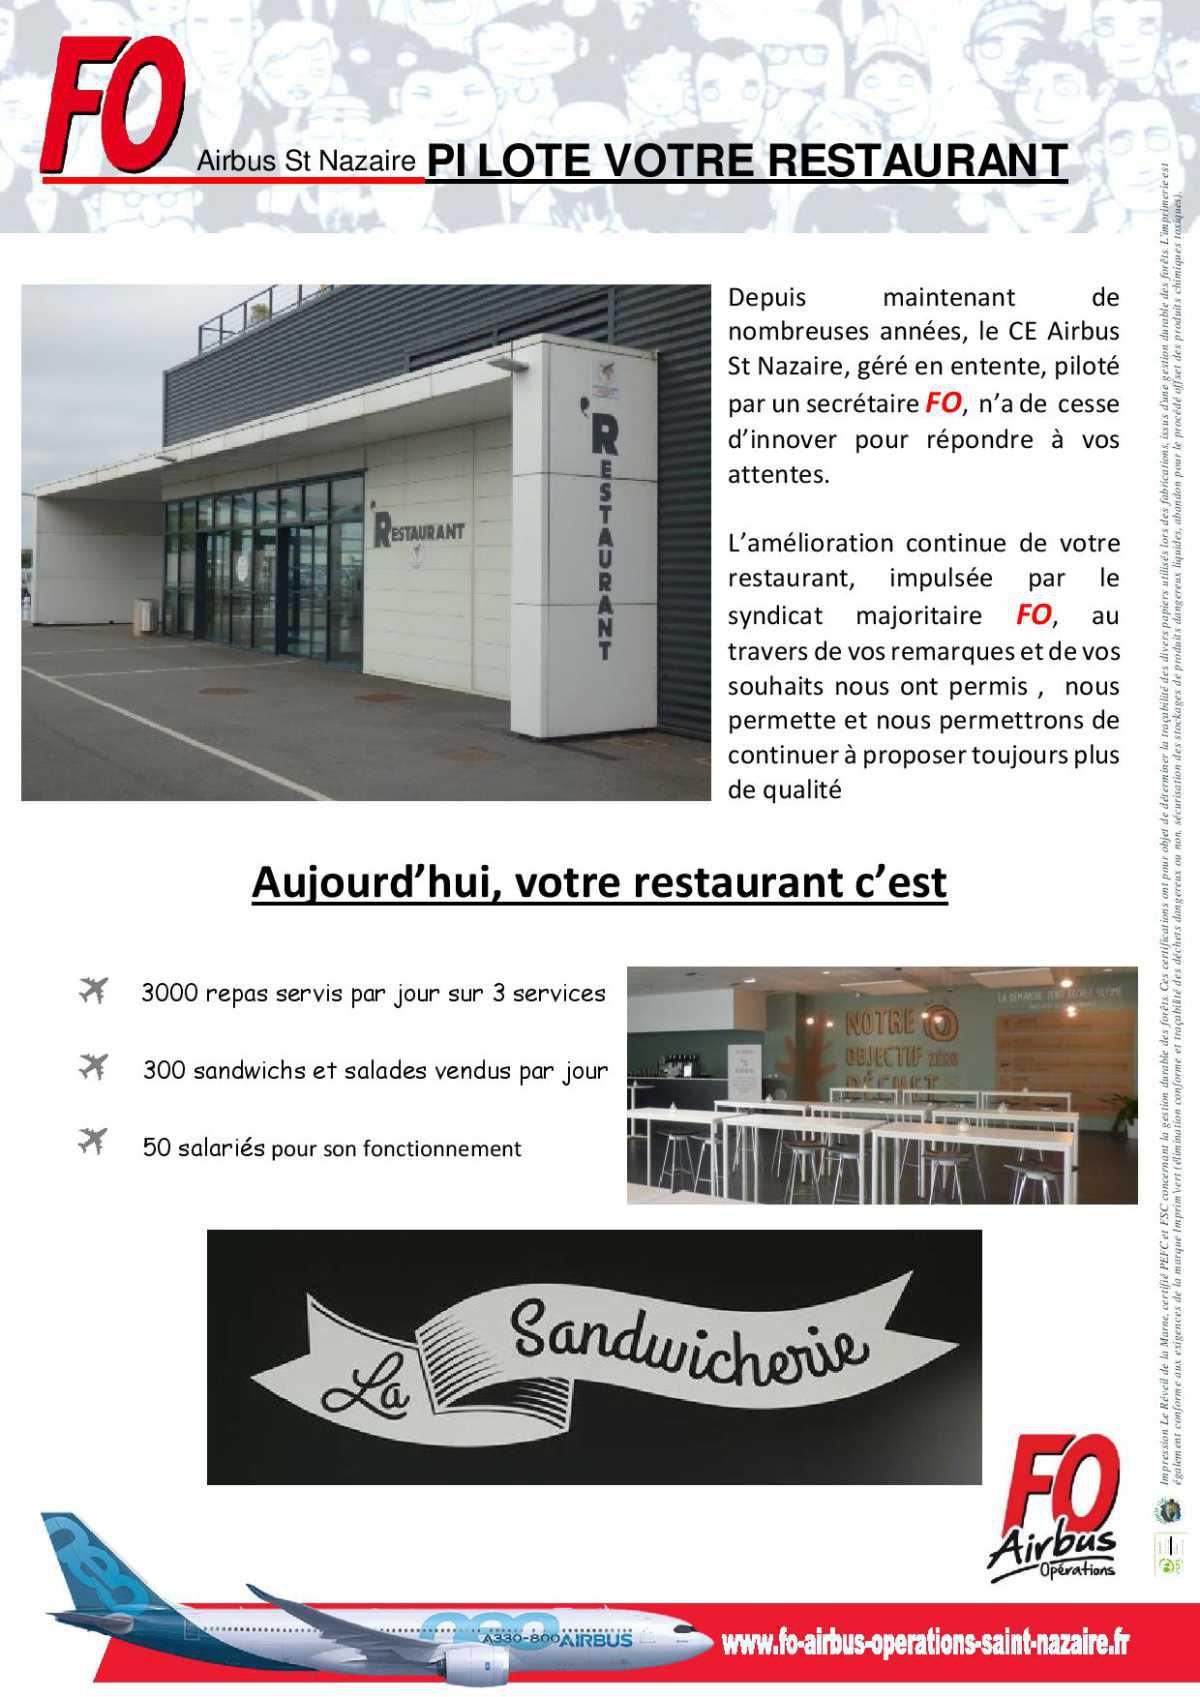 FO Airbus St Nazaire pilote votre restaurant